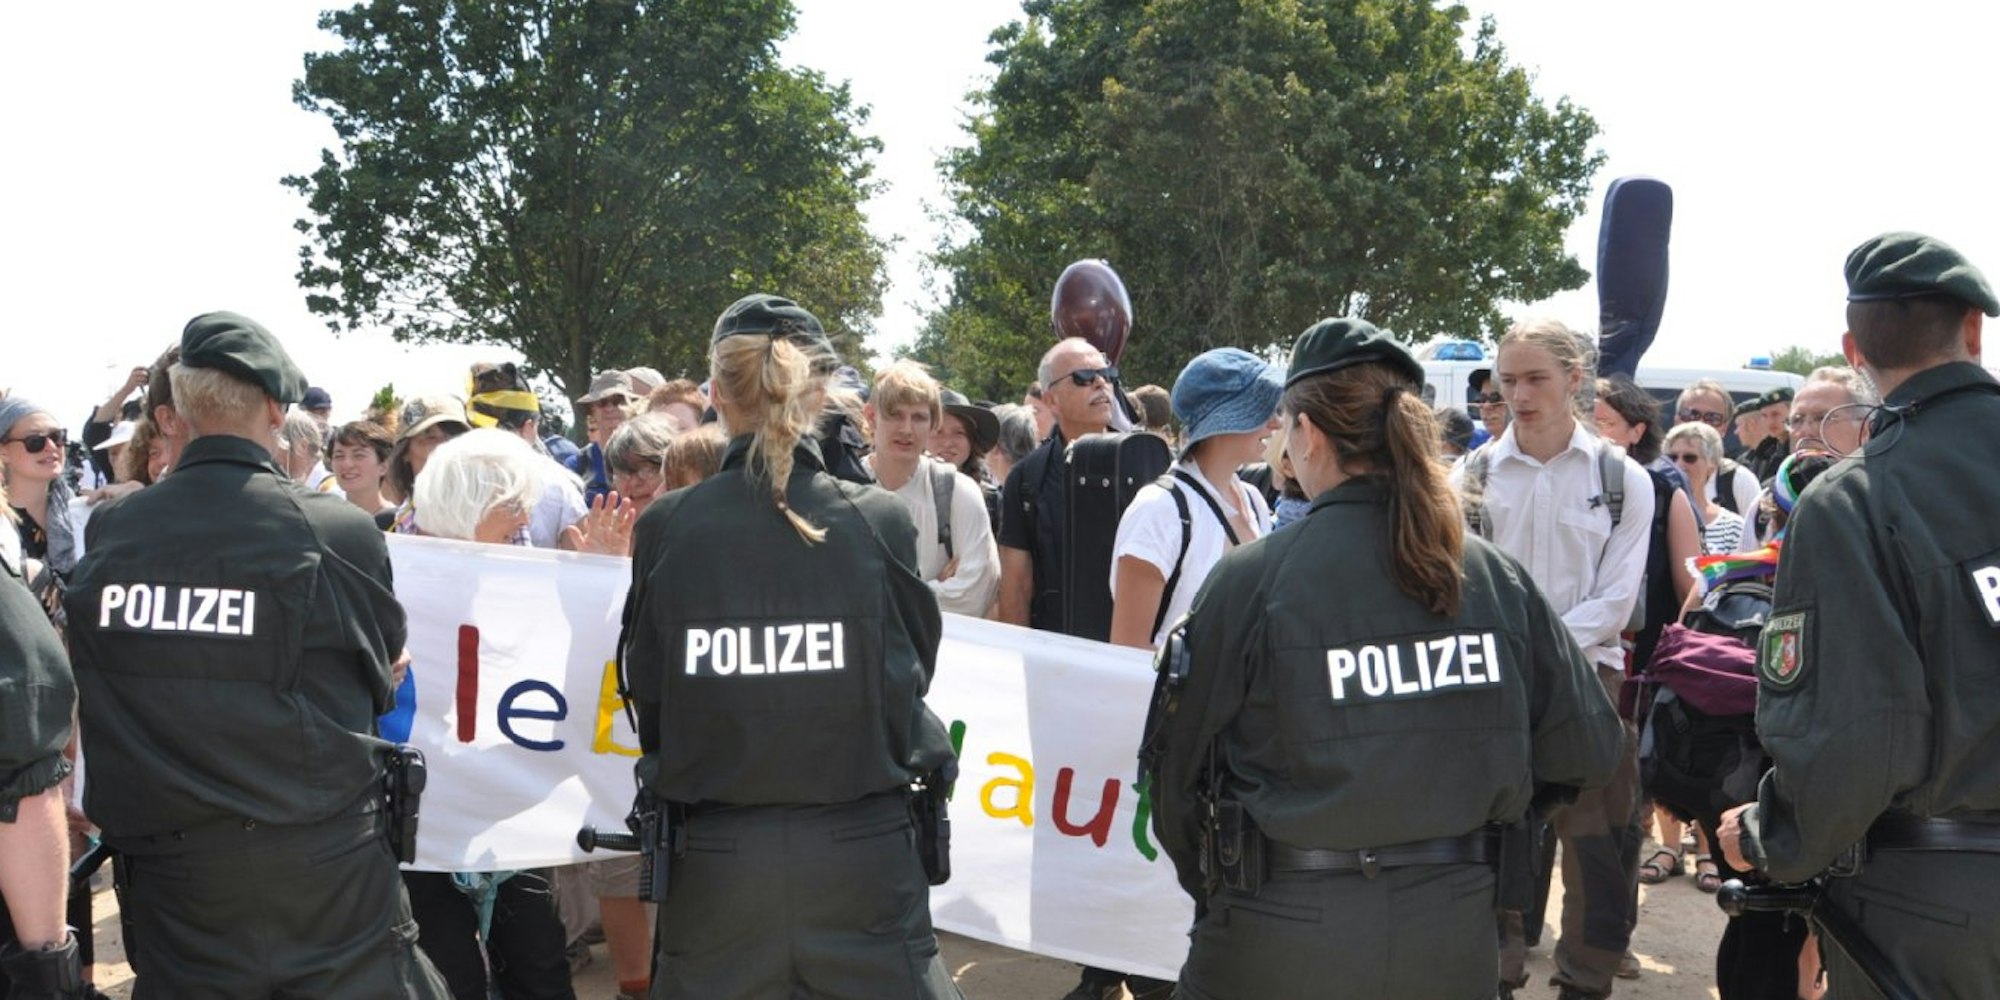 Zahlreiche Polizisten hinderten die Aktivisten am Weitergehen bis zur Abbruchkante.